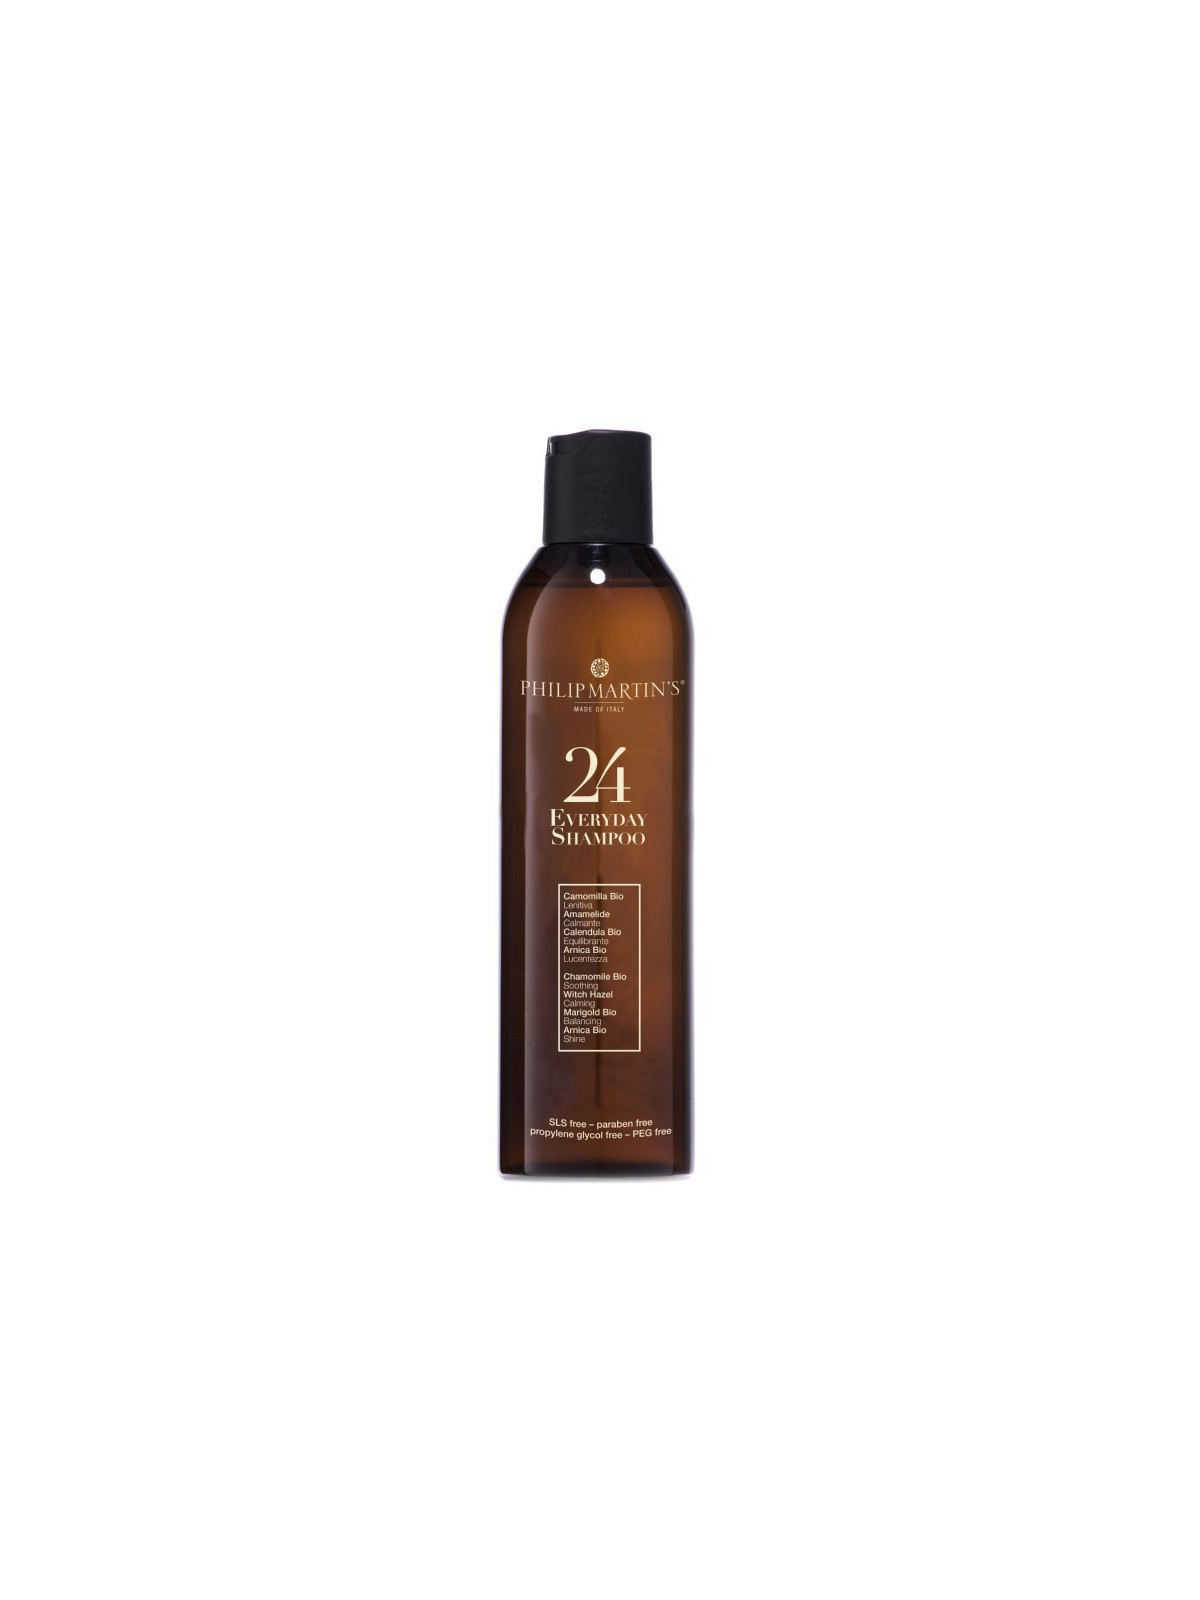 Kasdienis plaukų šampūnas Philip Martin's 24 Everyday Shampoo 250ml